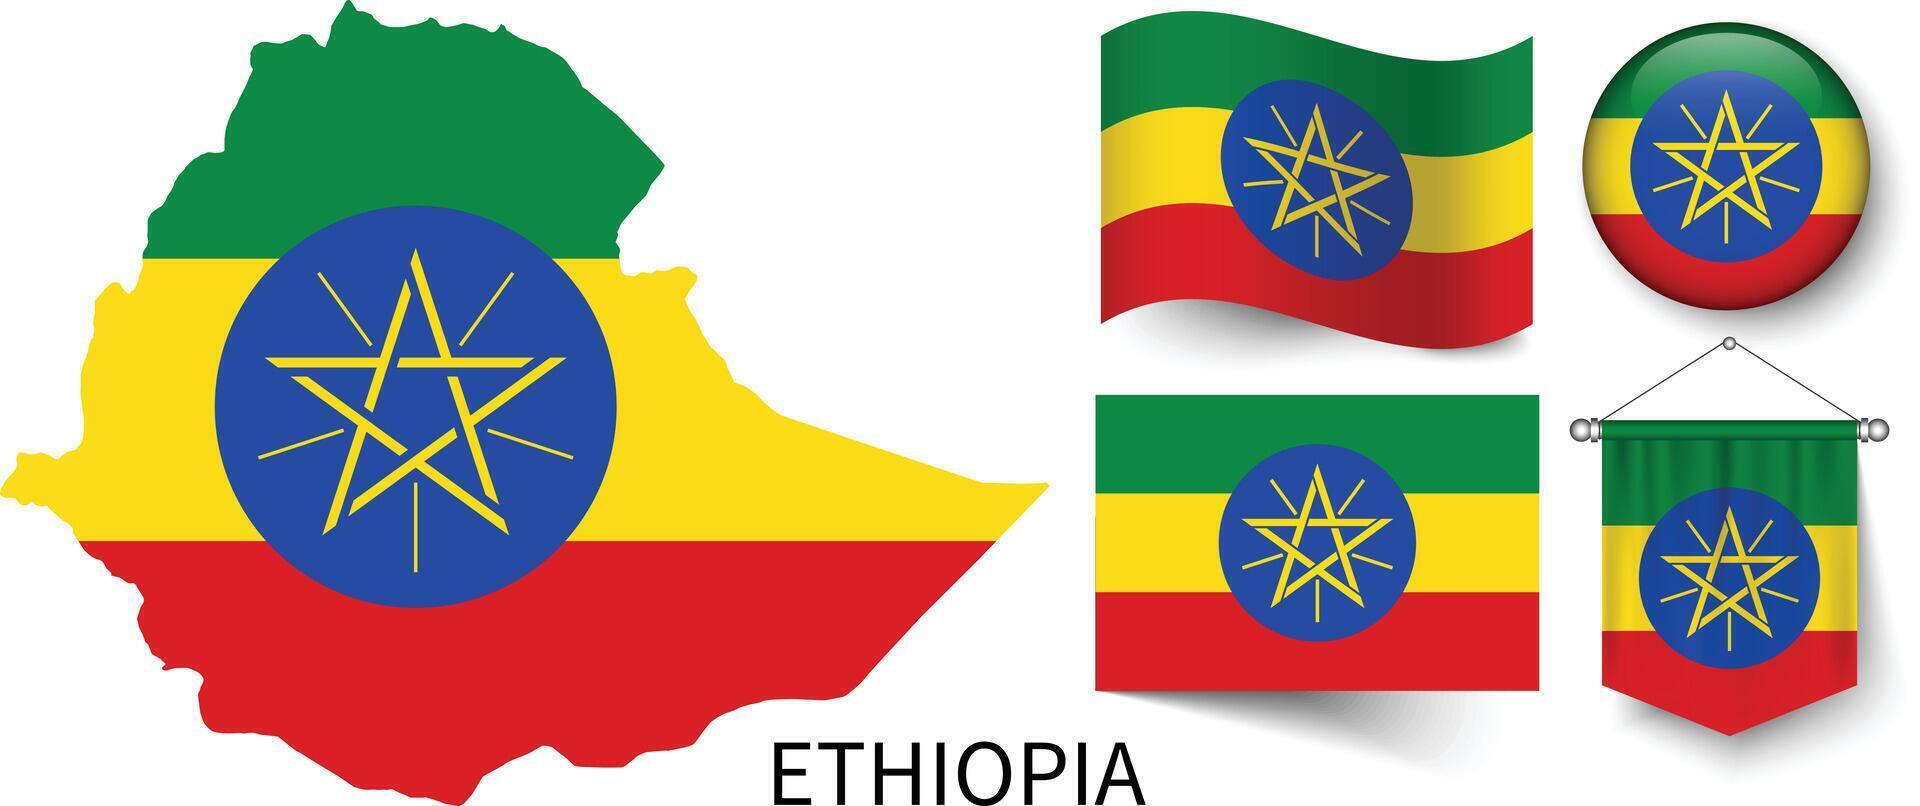 el varios patrones de el Etiopía nacional banderas y el mapa de Etiopía fronteras vector